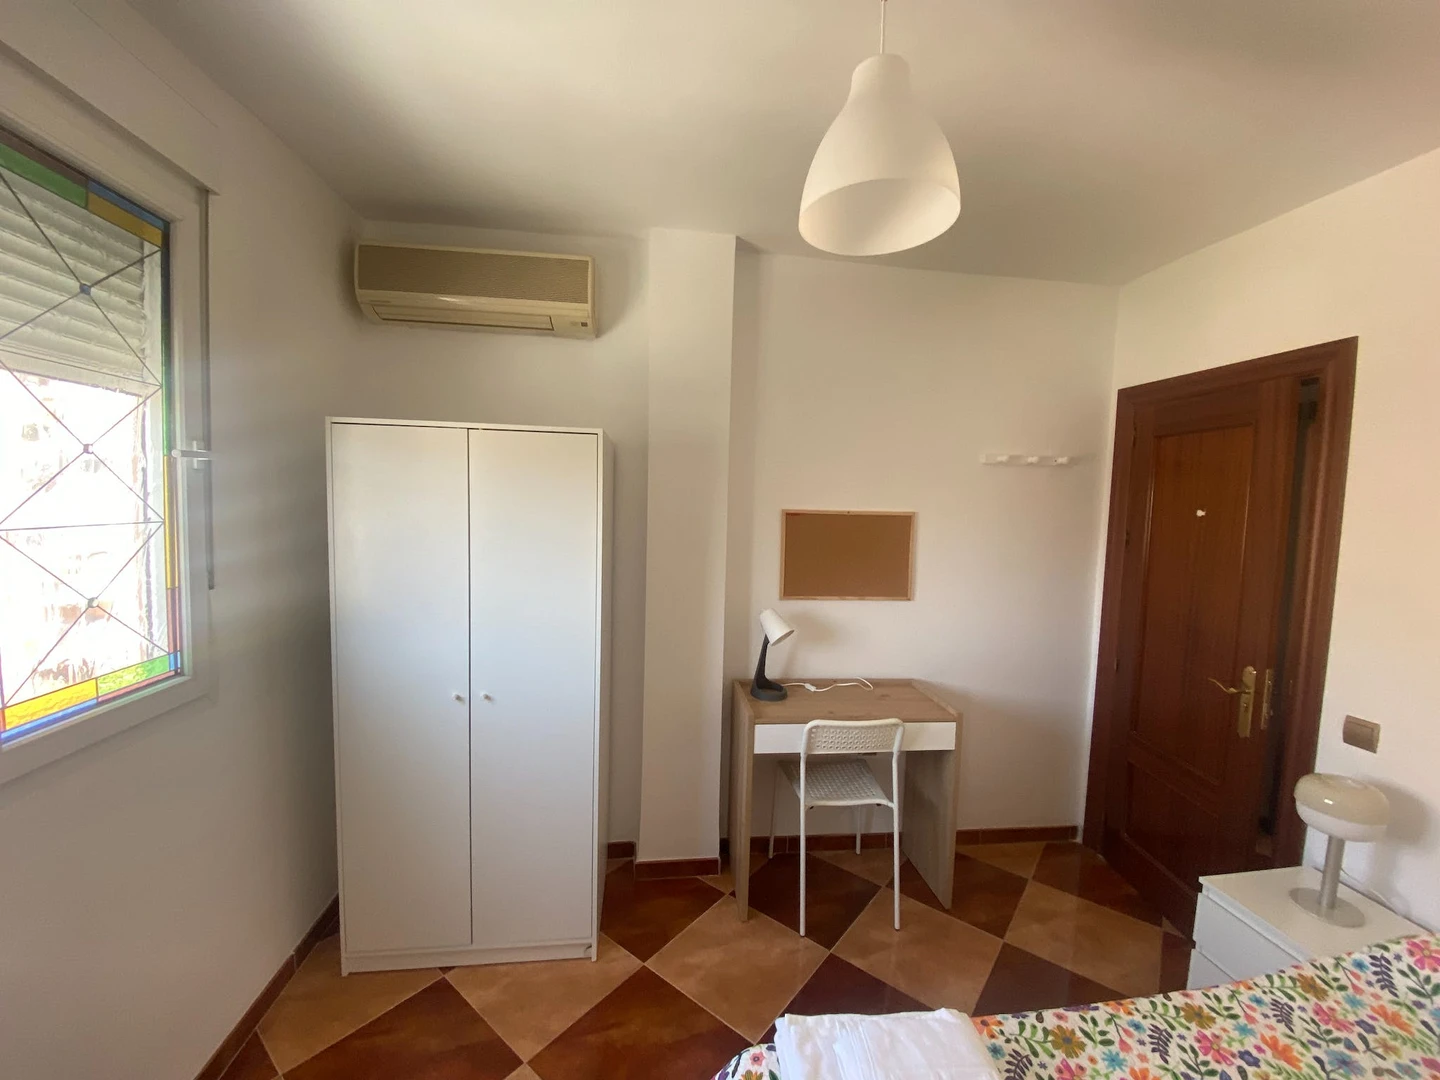 Habitación compartida con otro estudiante en Málaga